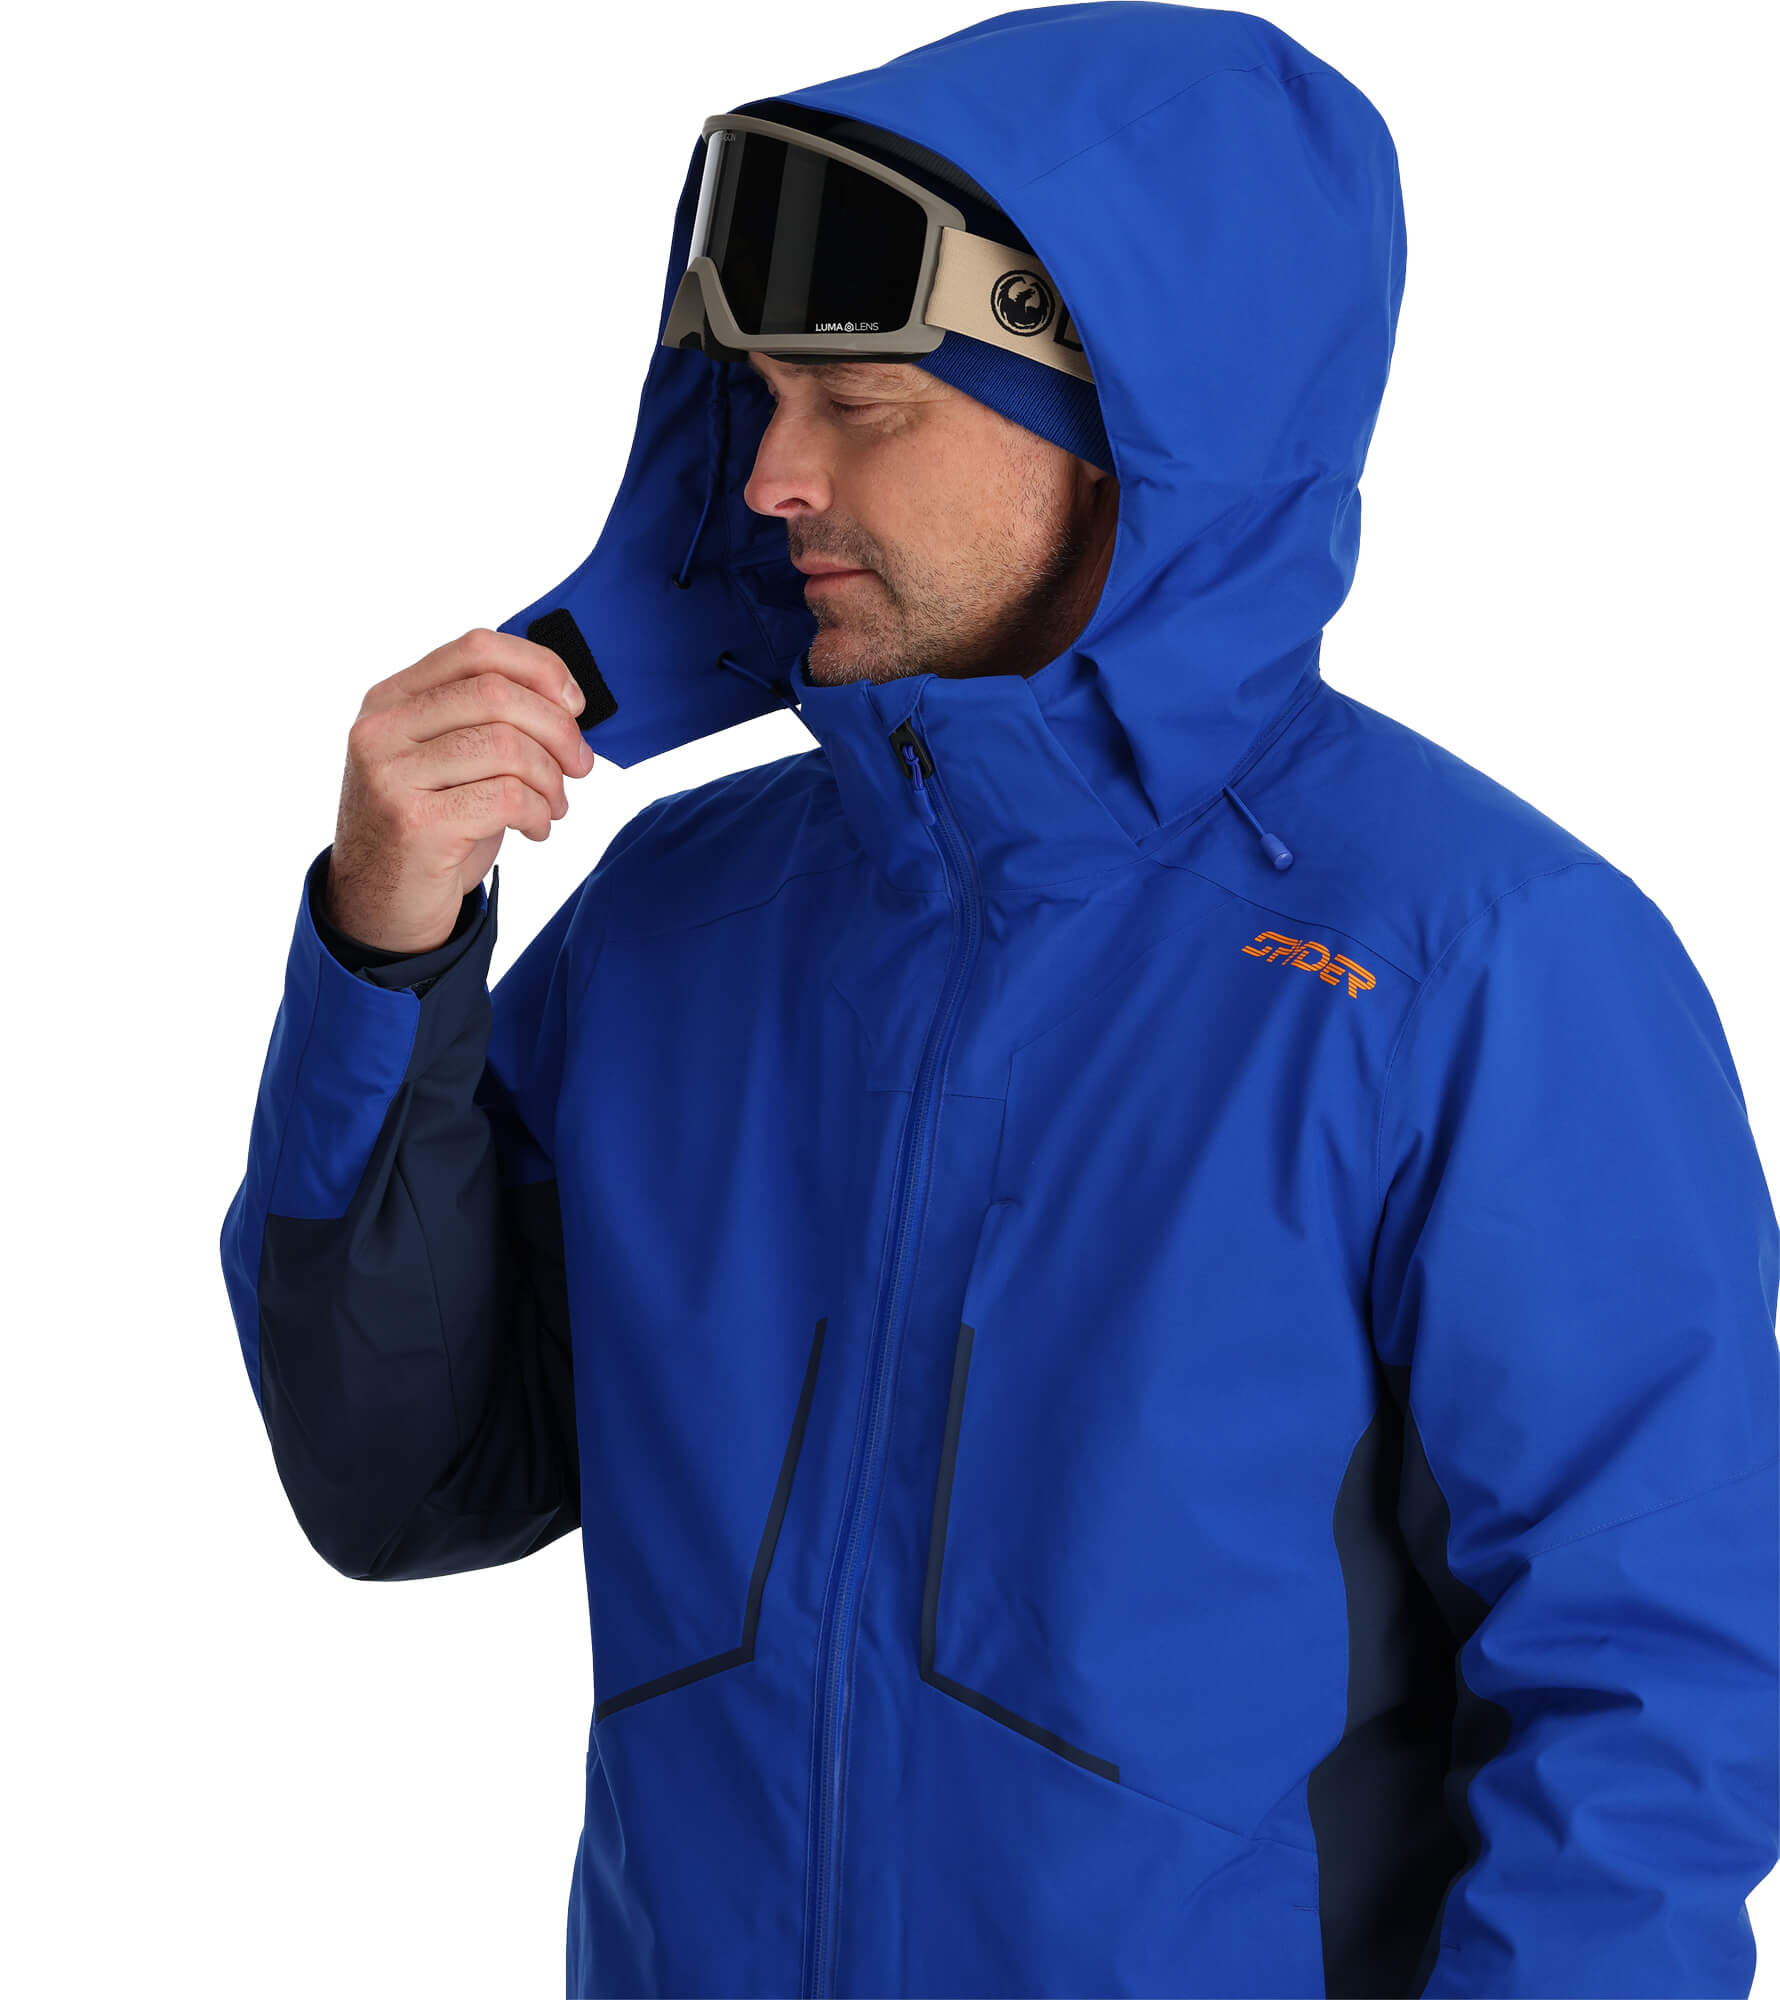 Spyder Primer Men's Ski/Snowboard Jacket